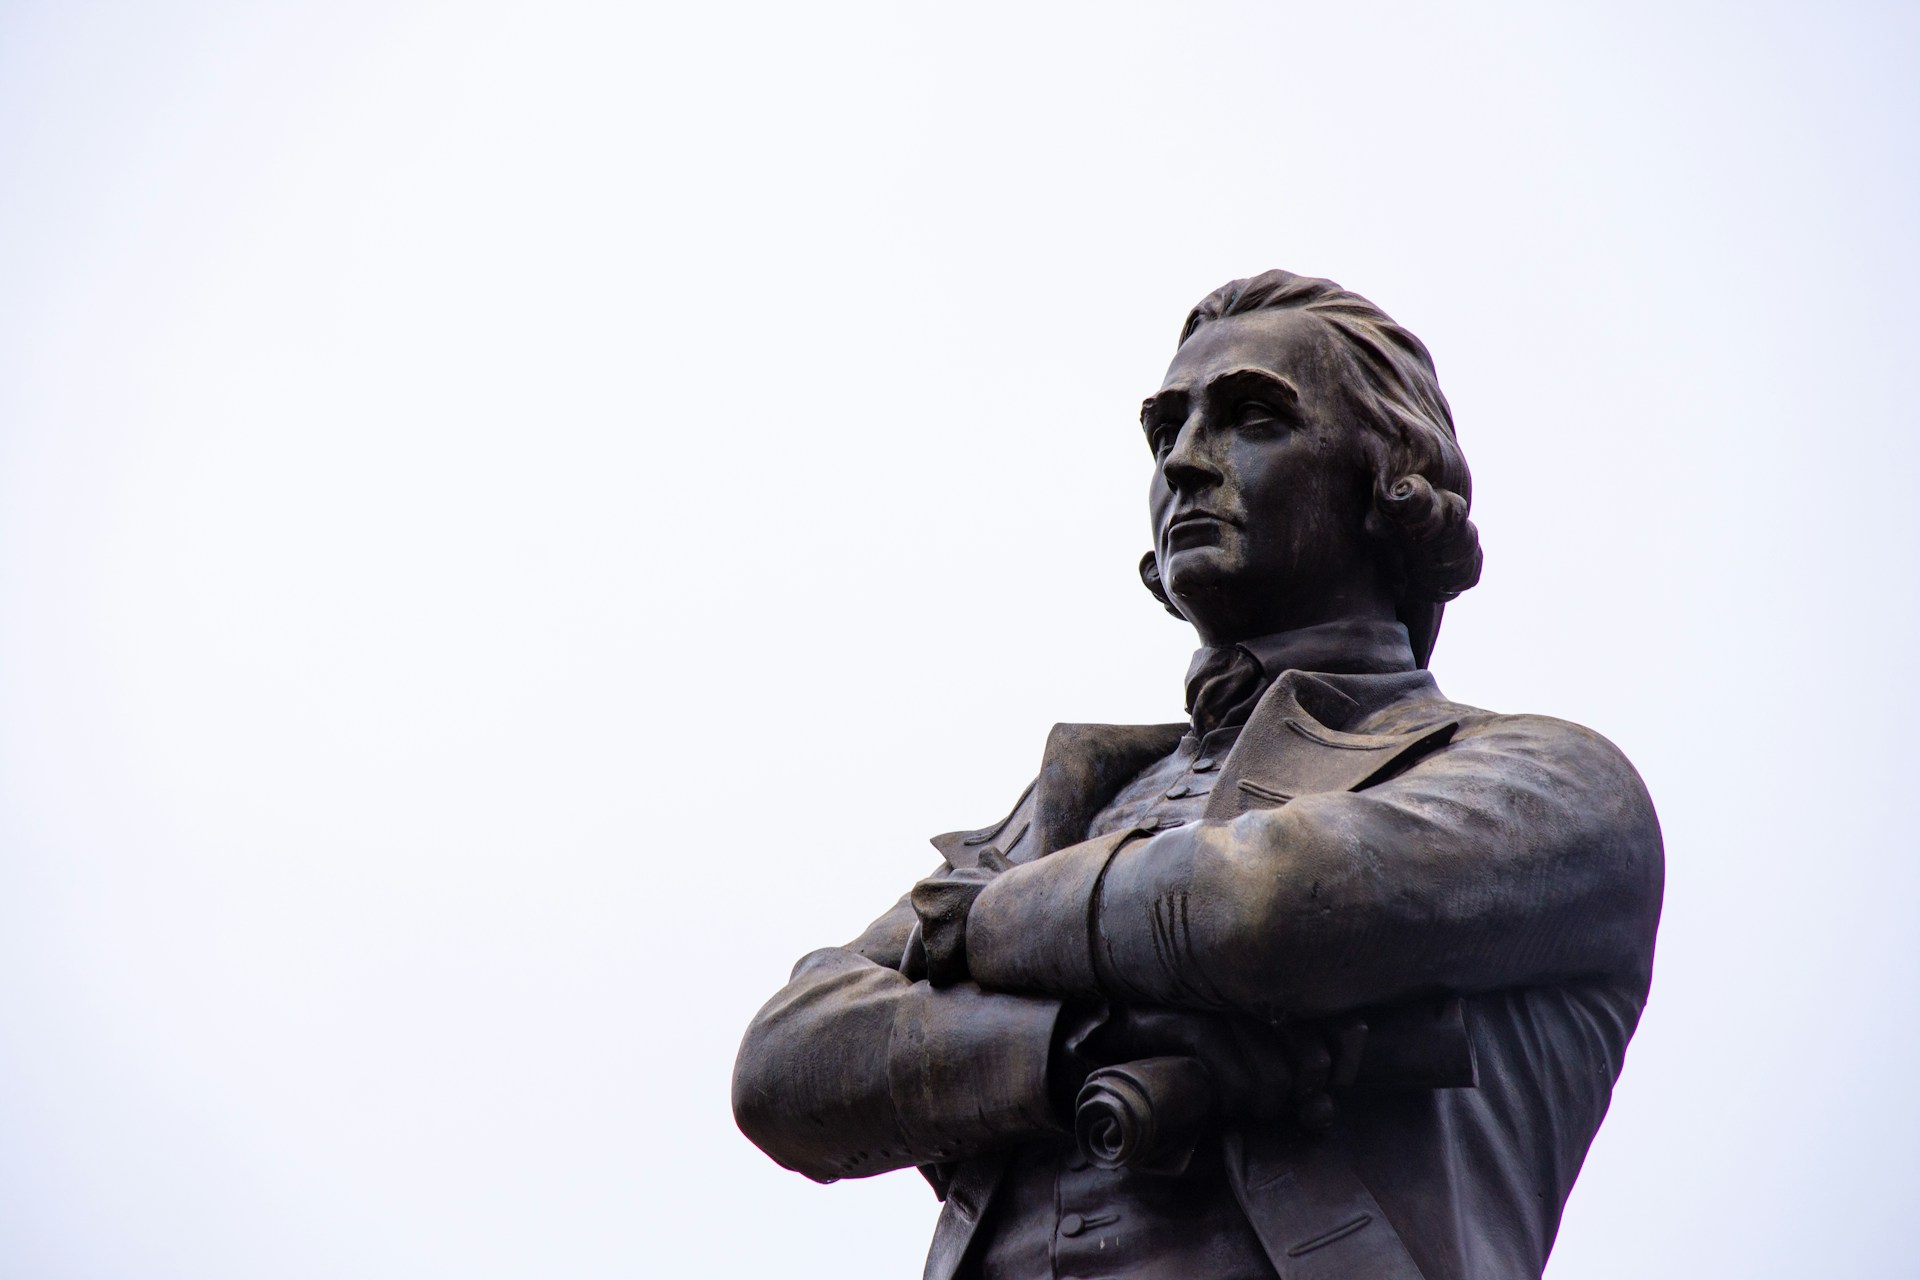 Adam Smith Statue